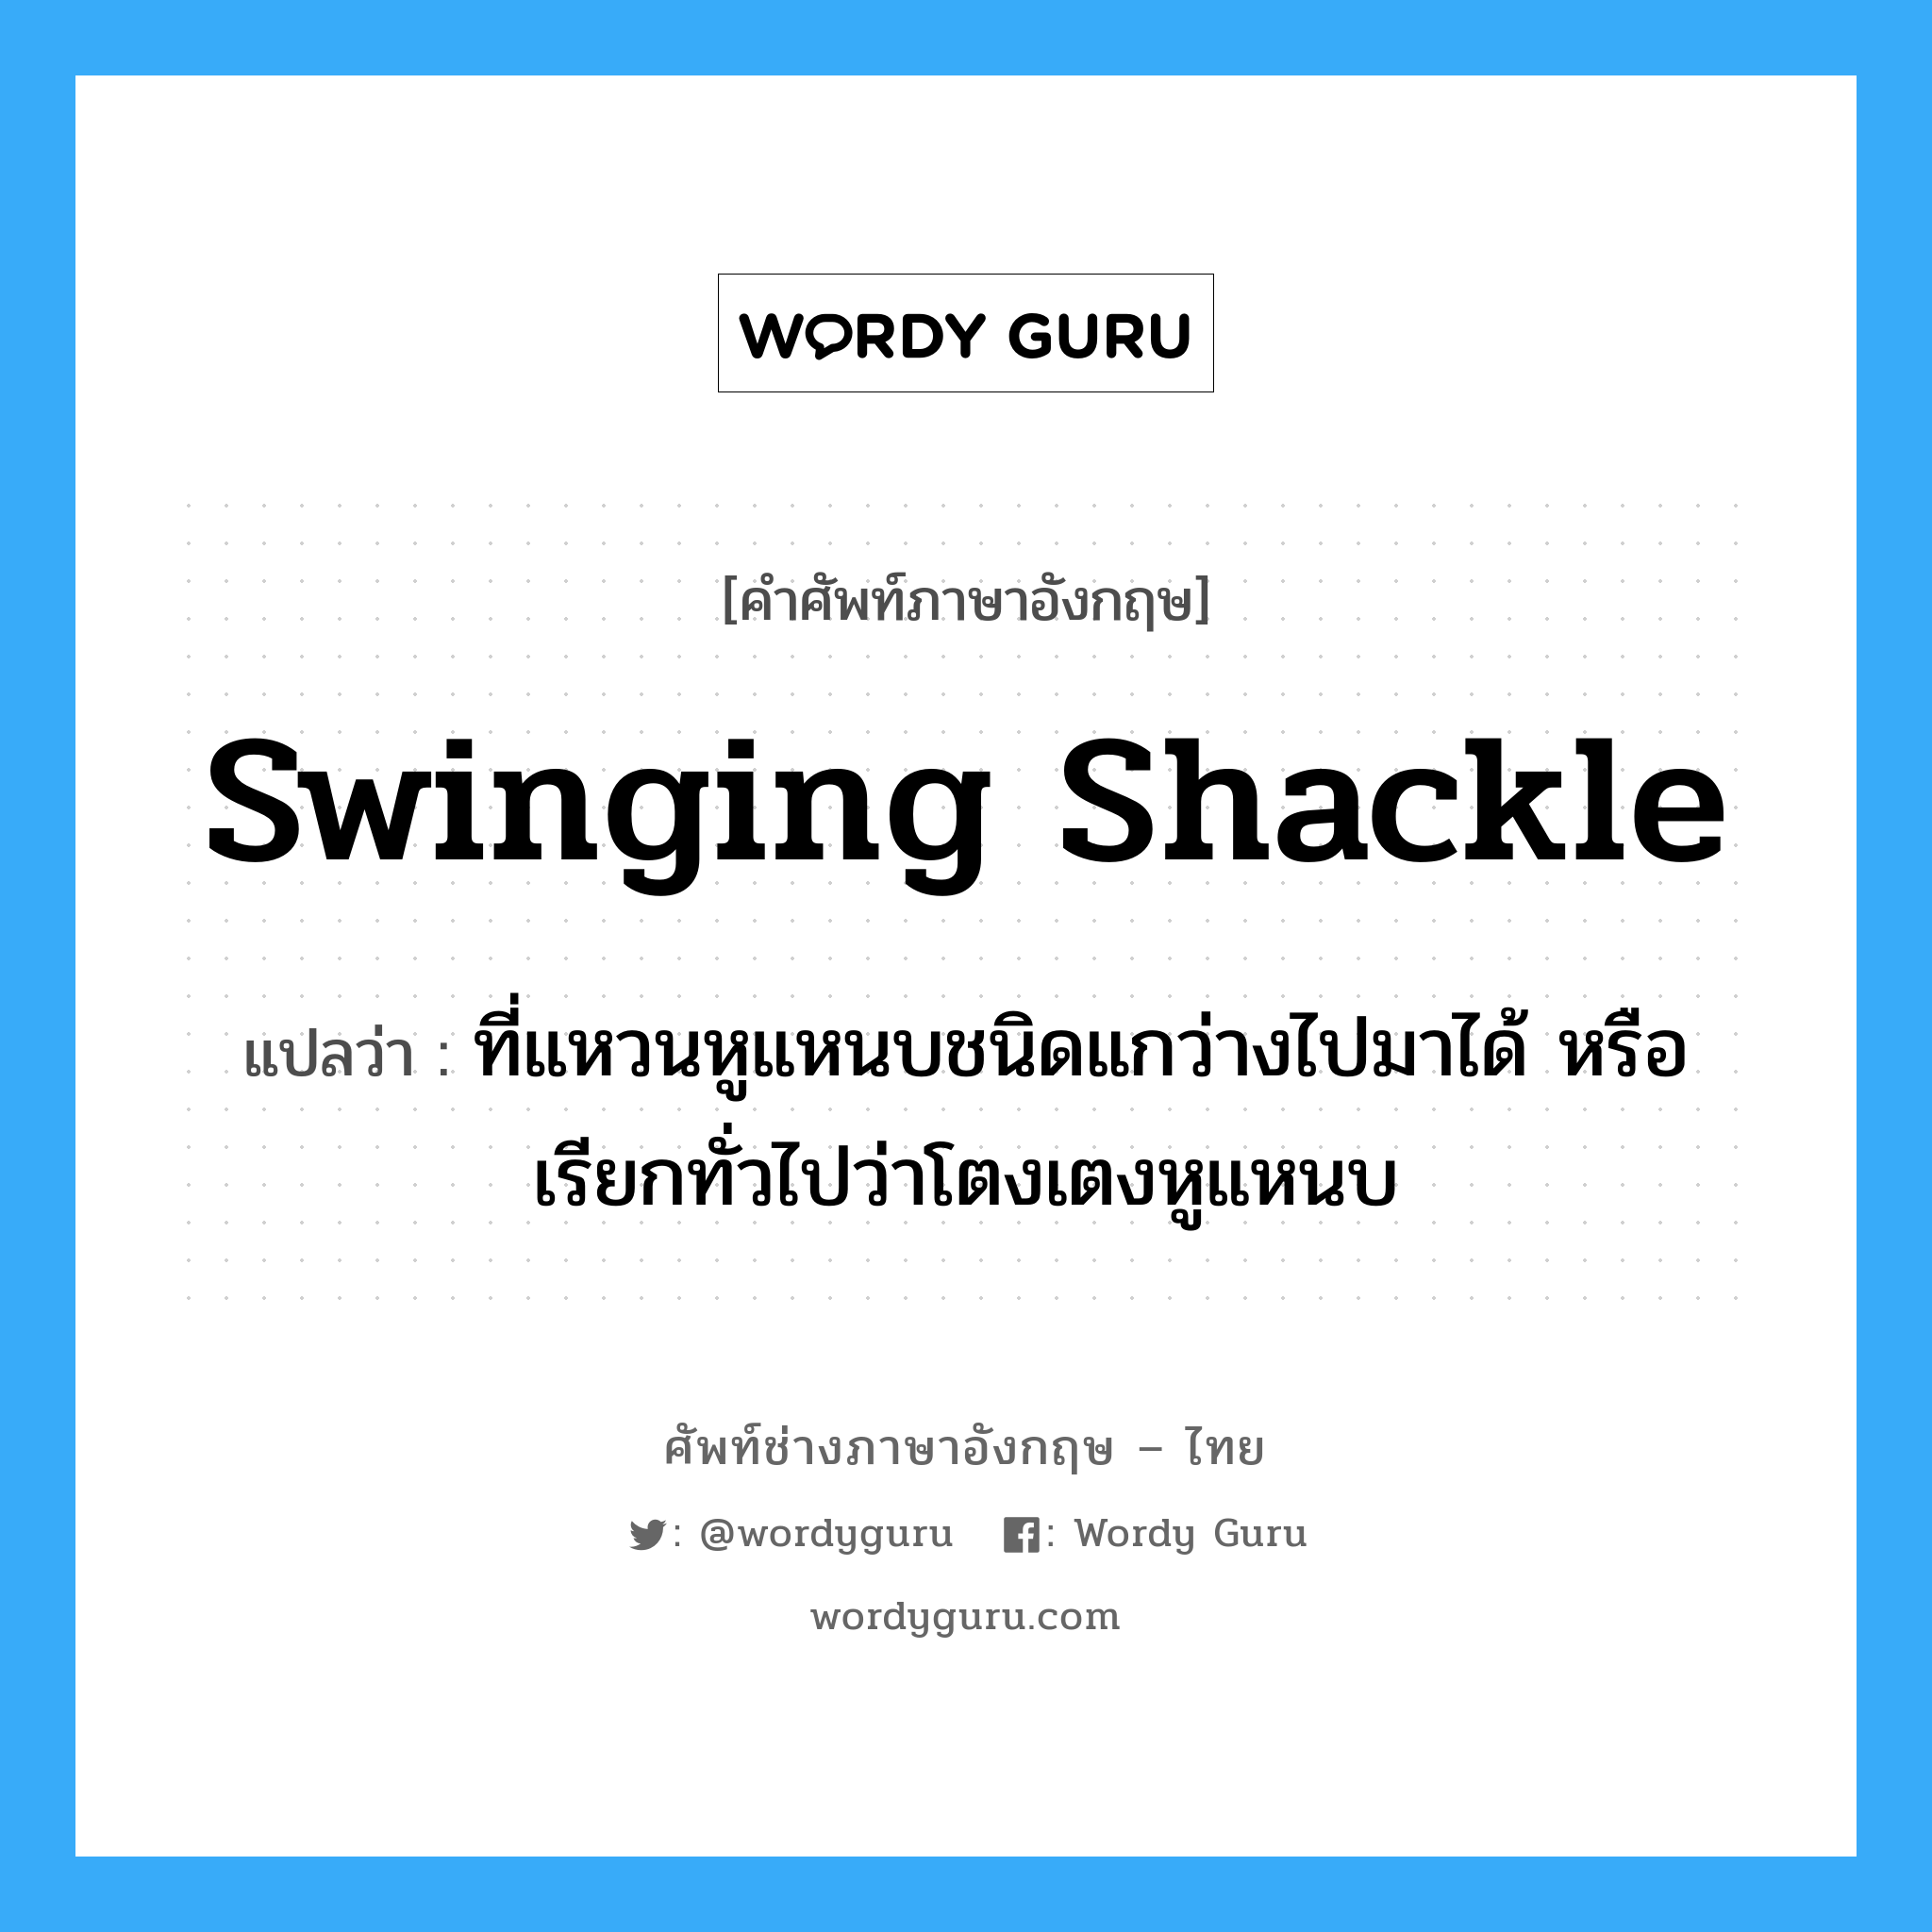 swinging shackle แปลว่า?, คำศัพท์ช่างภาษาอังกฤษ - ไทย swinging shackle คำศัพท์ภาษาอังกฤษ swinging shackle แปลว่า ที่แหวนหูแหนบชนิดแกว่างไปมาได้ หรือเรียกทั่วไปว่าโตงเตงหูแหนบ